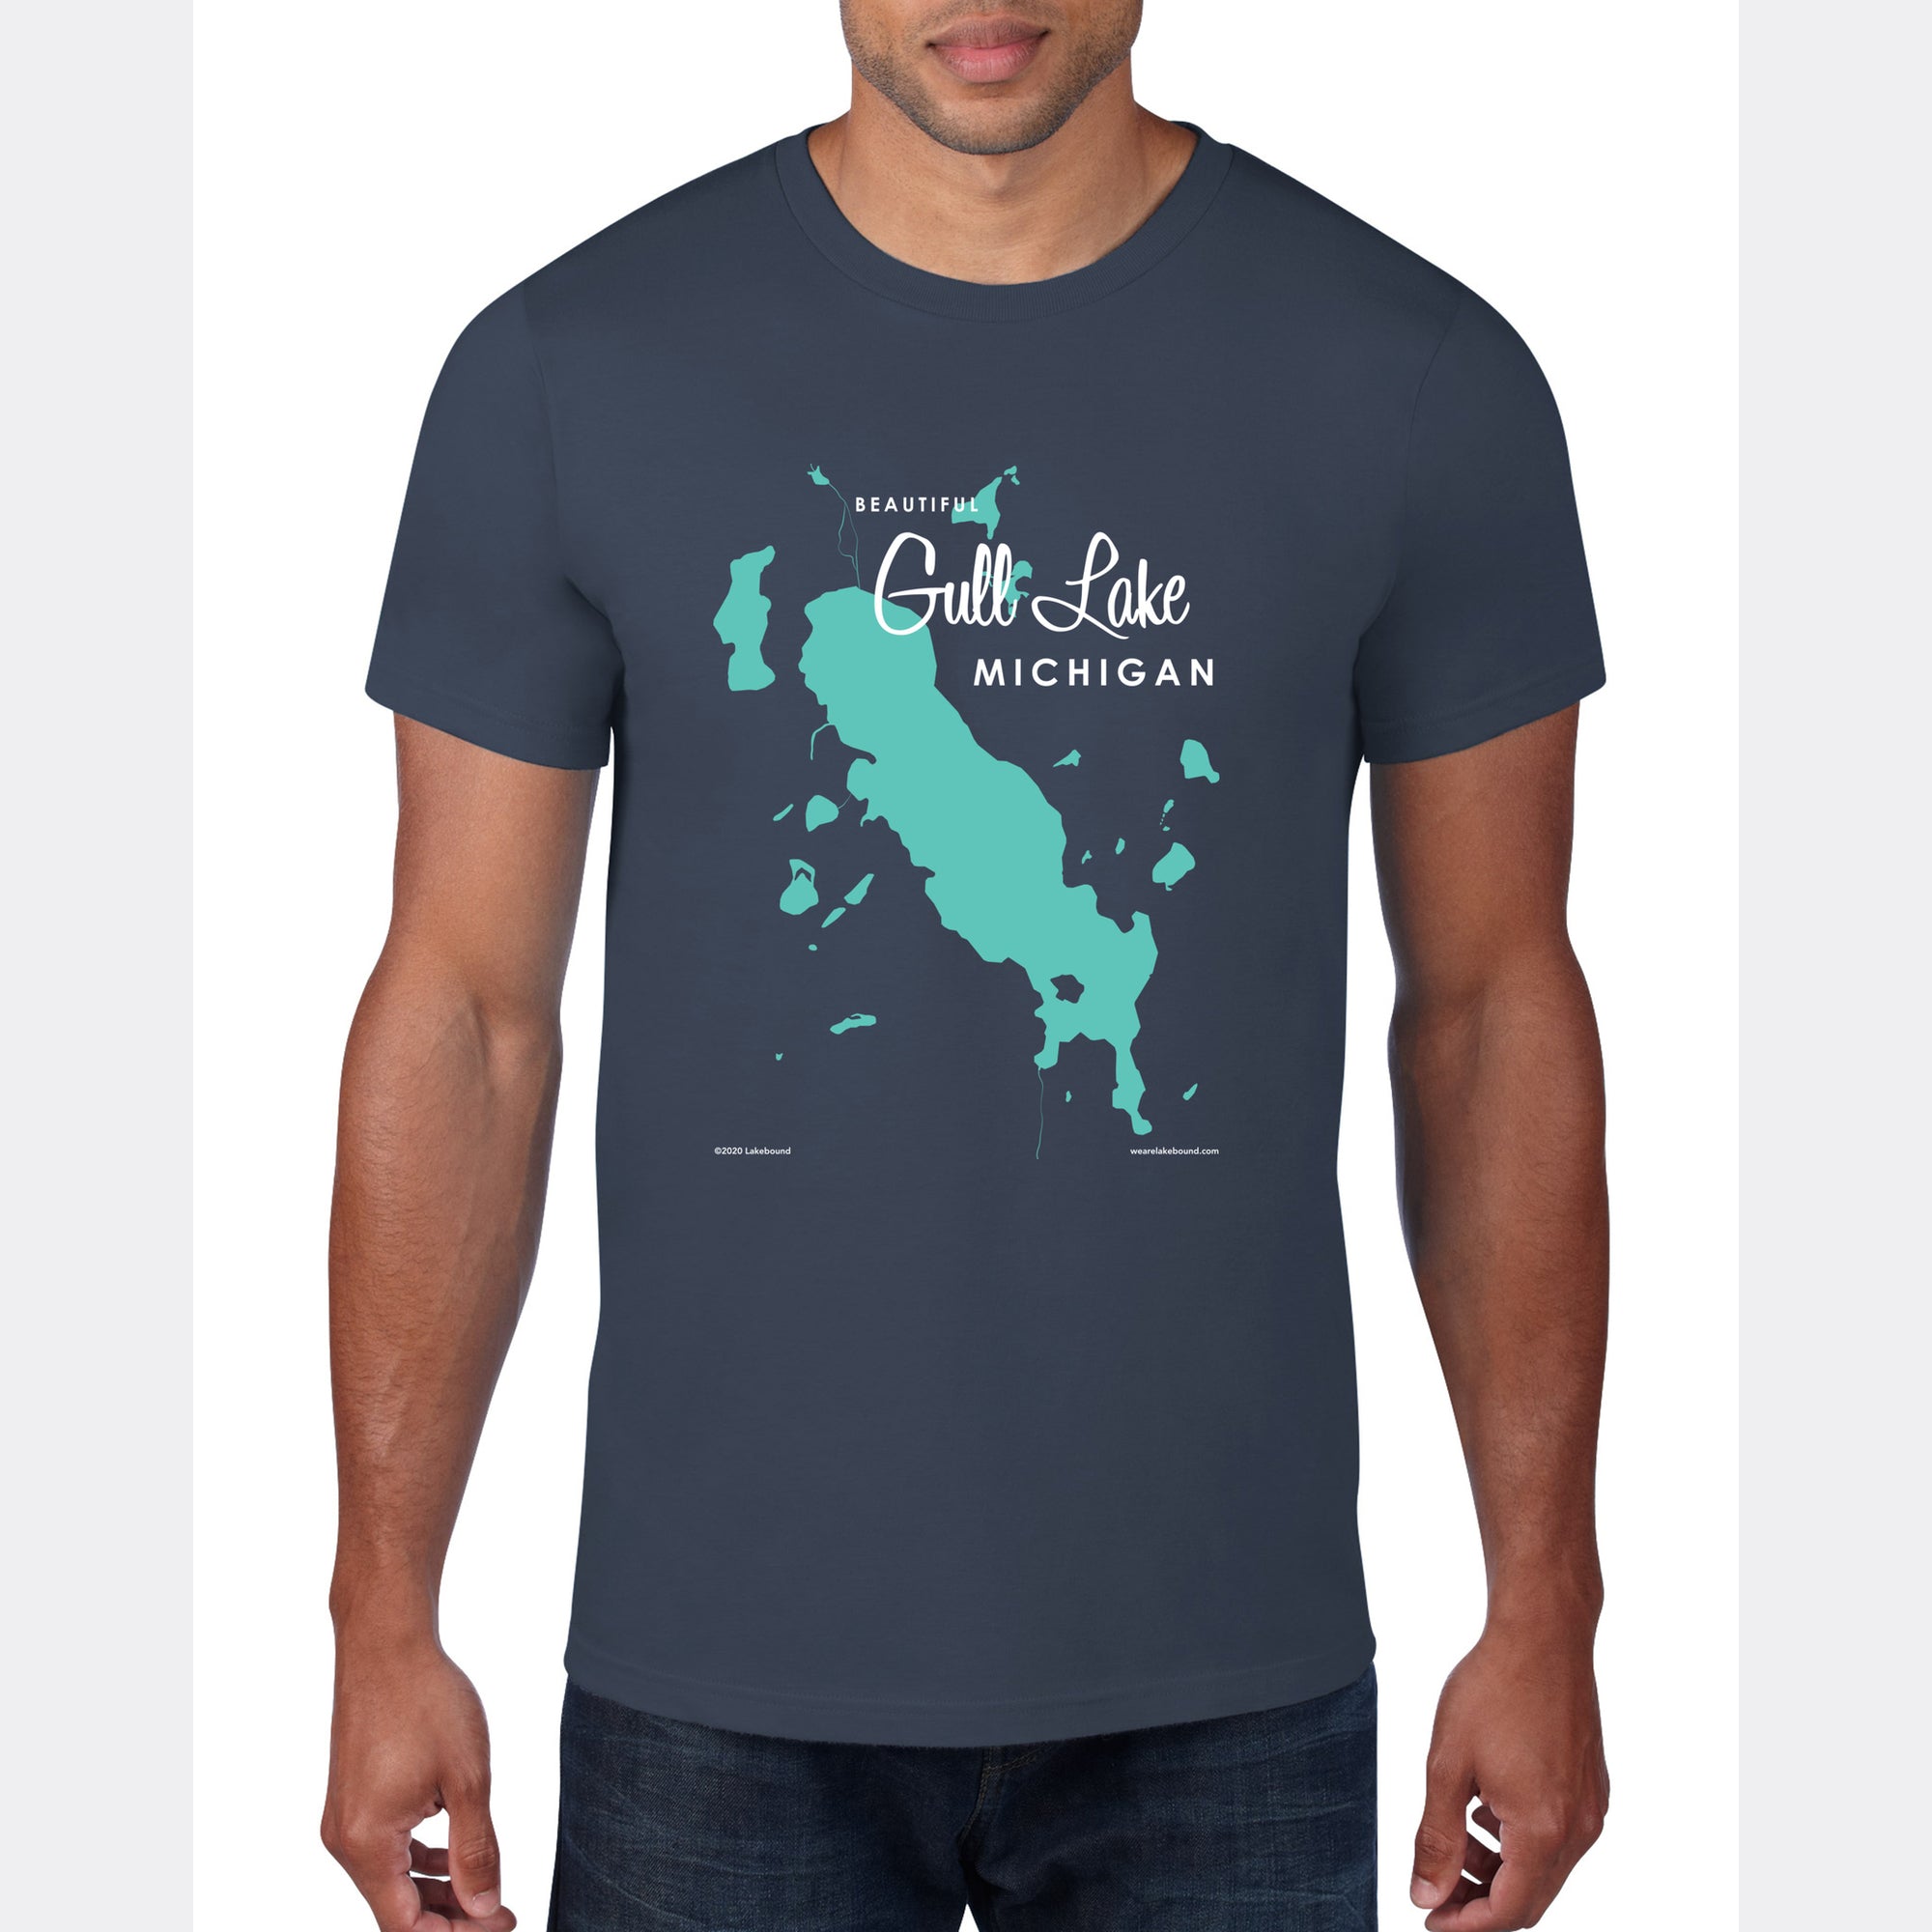 Gull Lake Michigan, T-Shirt